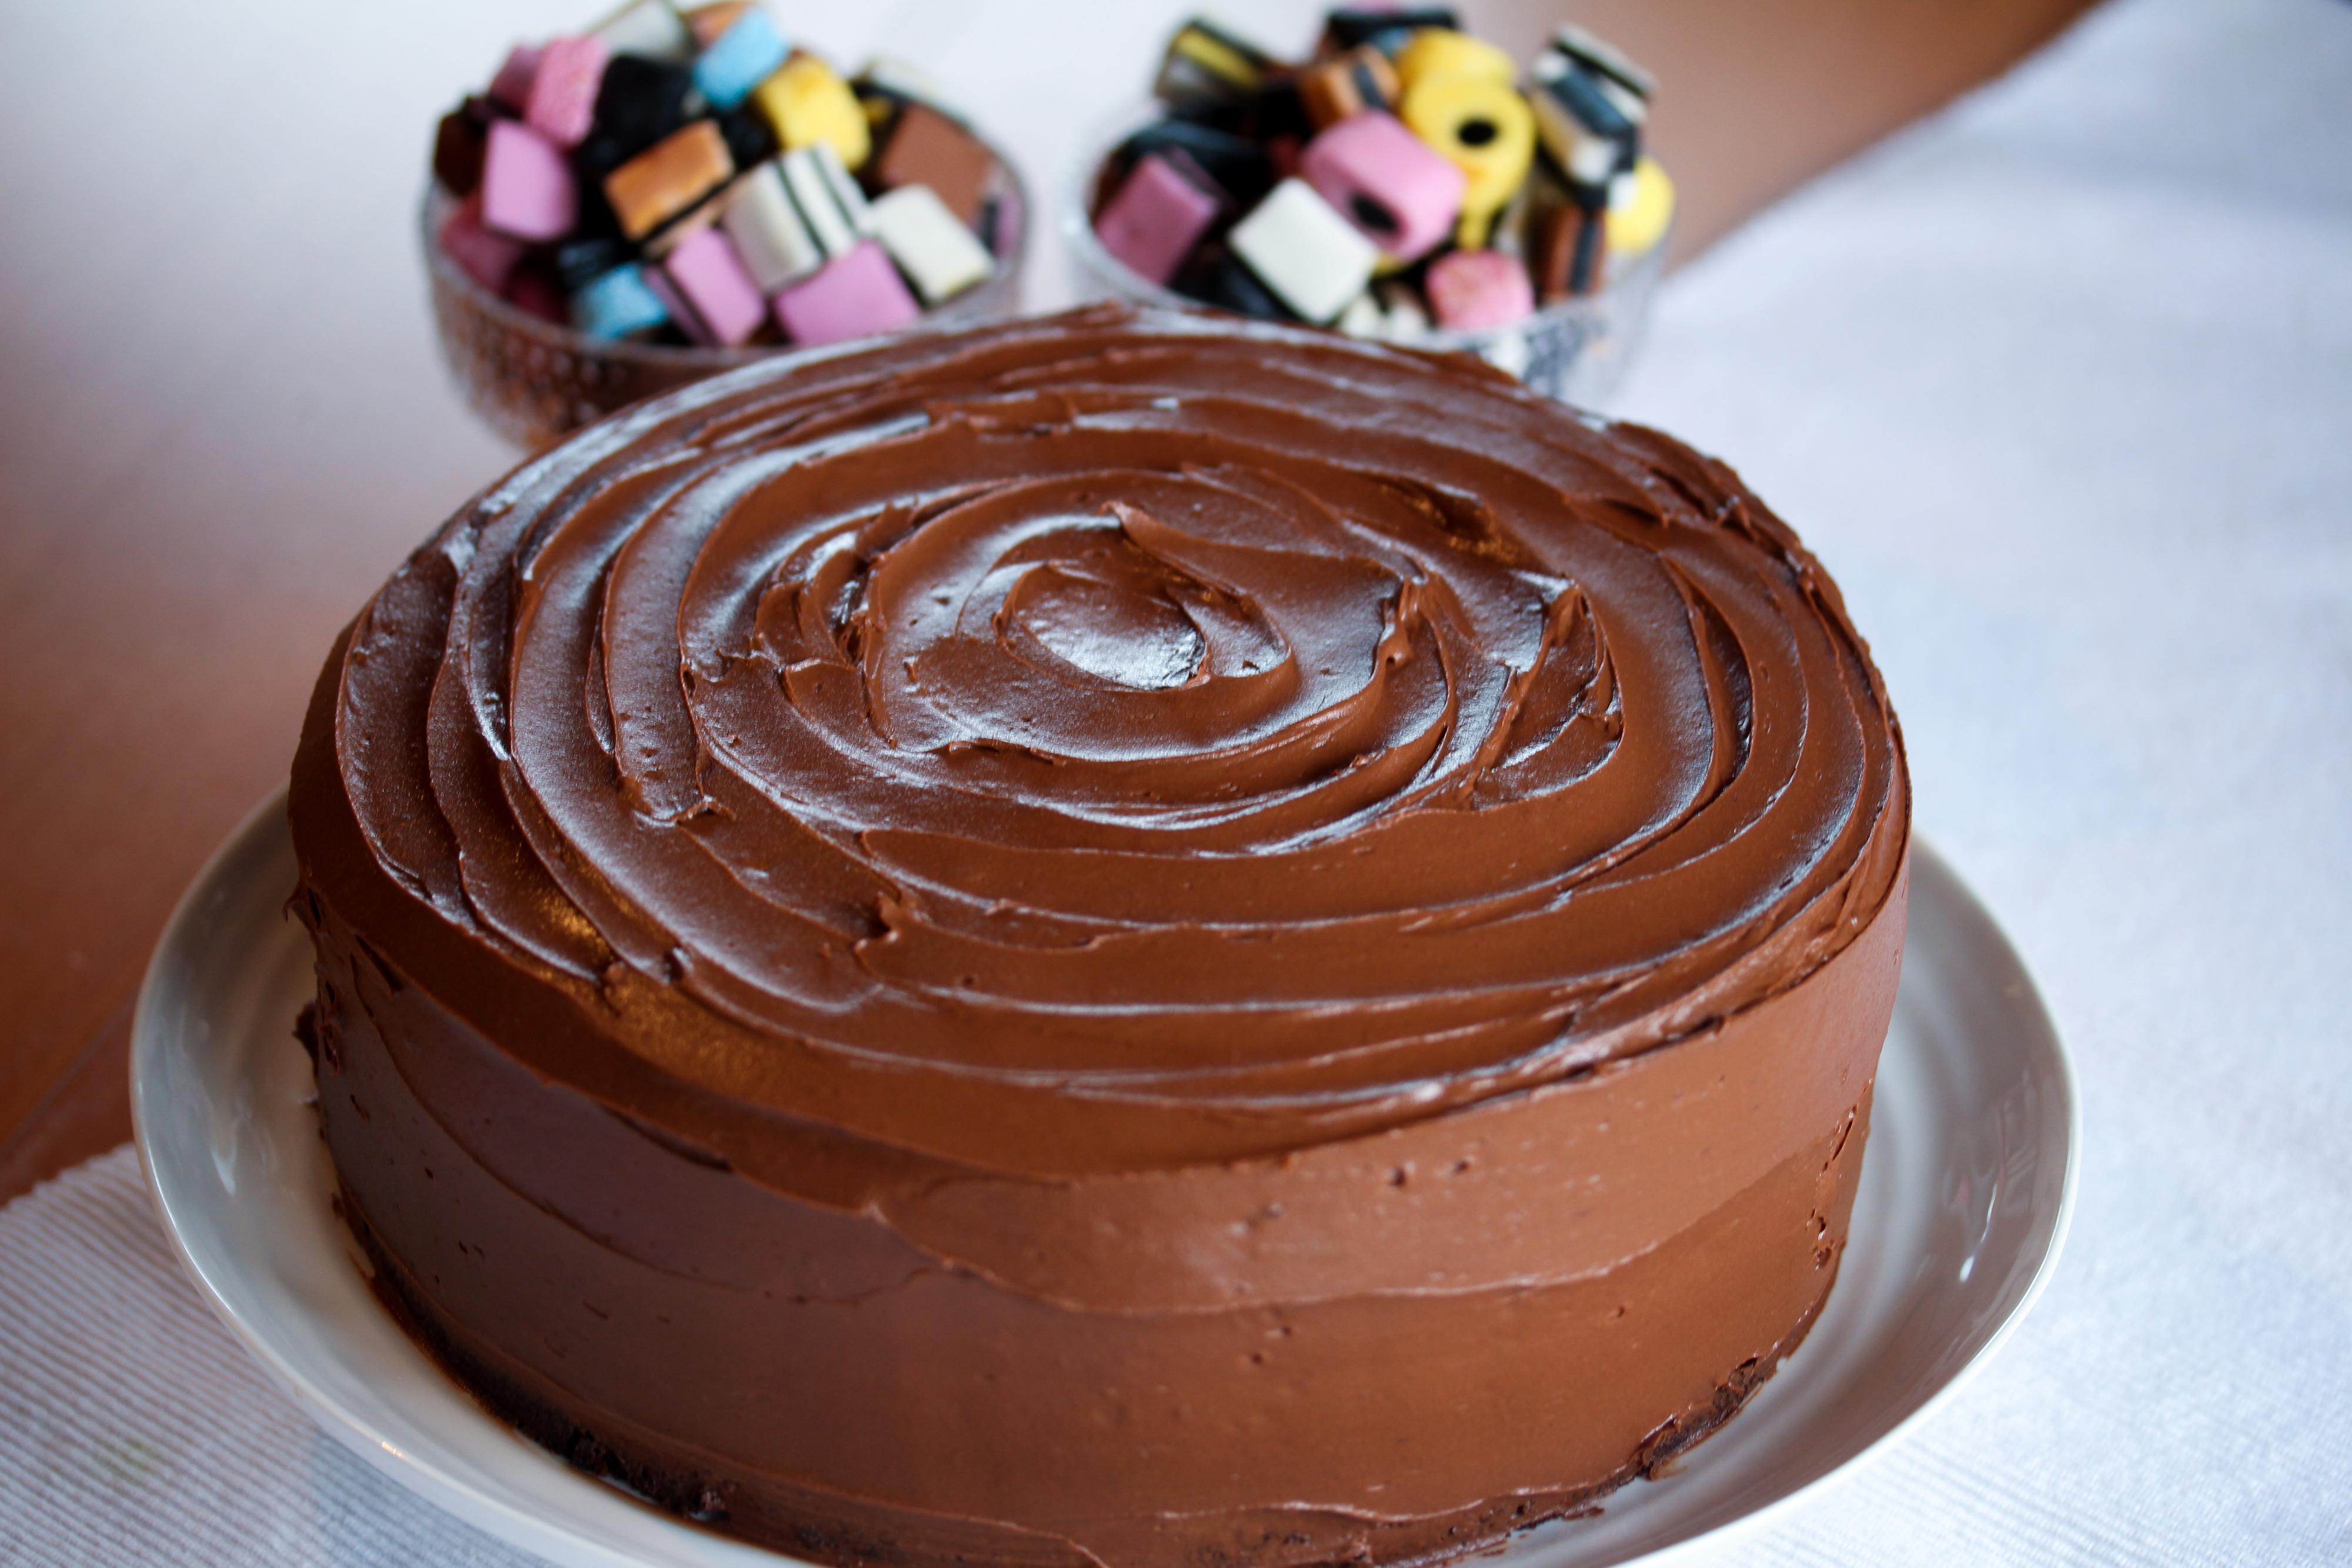 Fordel sjokoladekremen mellom kakebunnene og rundt hele kaken.